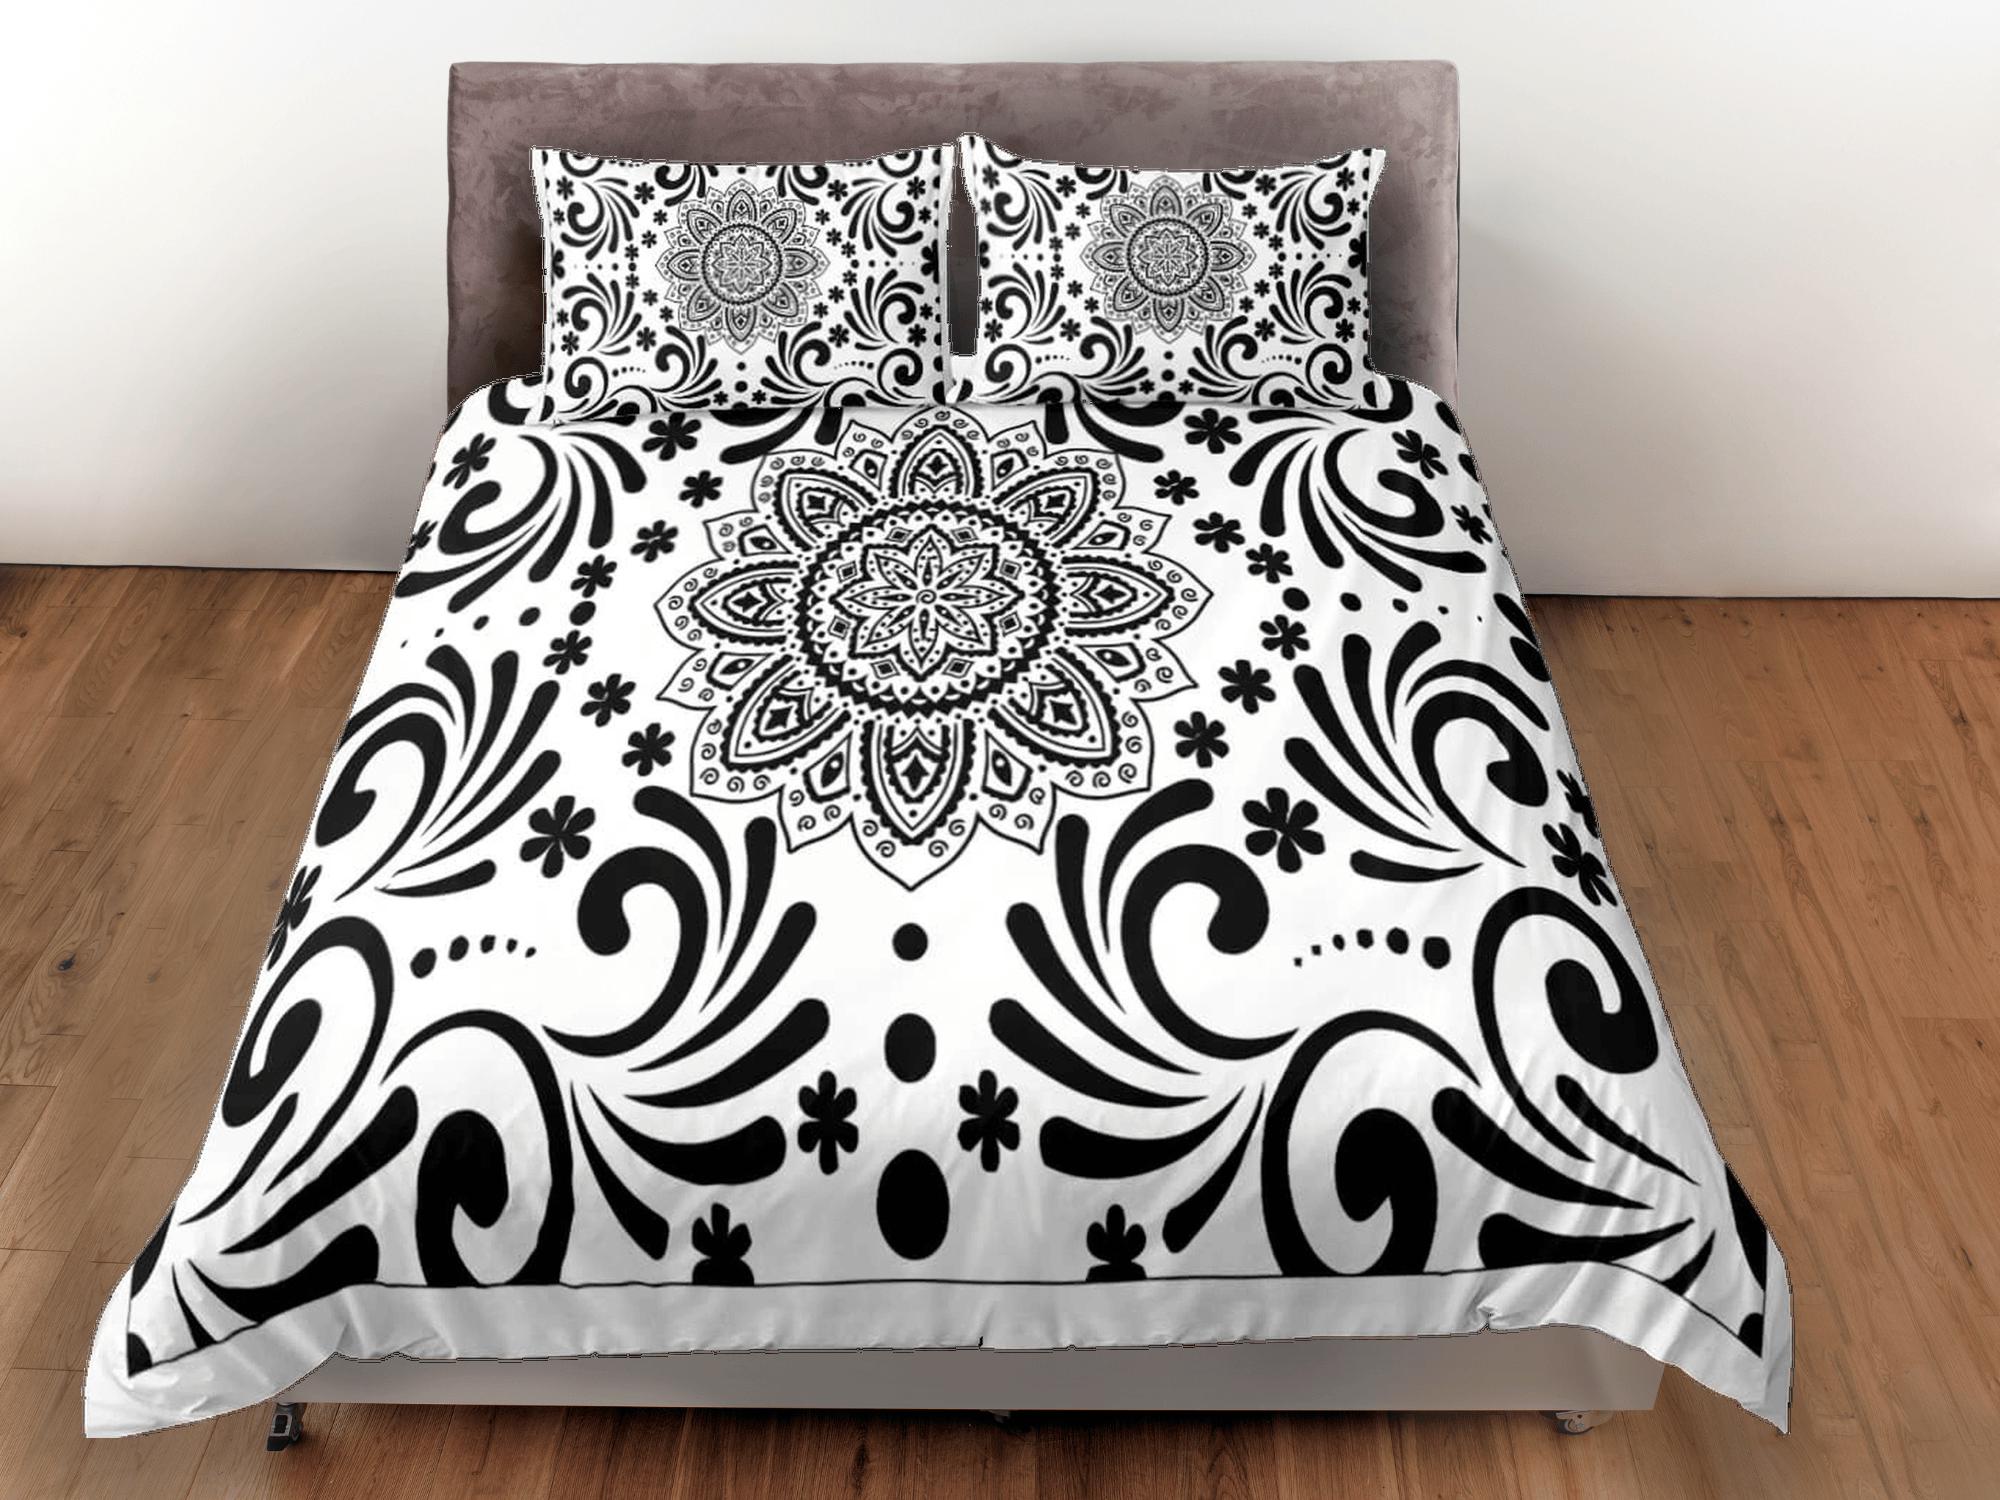 daintyduvet Black and white mandala duvet cover boho bedding set full, queen, king, dorm bedding, aesthetic room decor indian bedspread maximalist decor